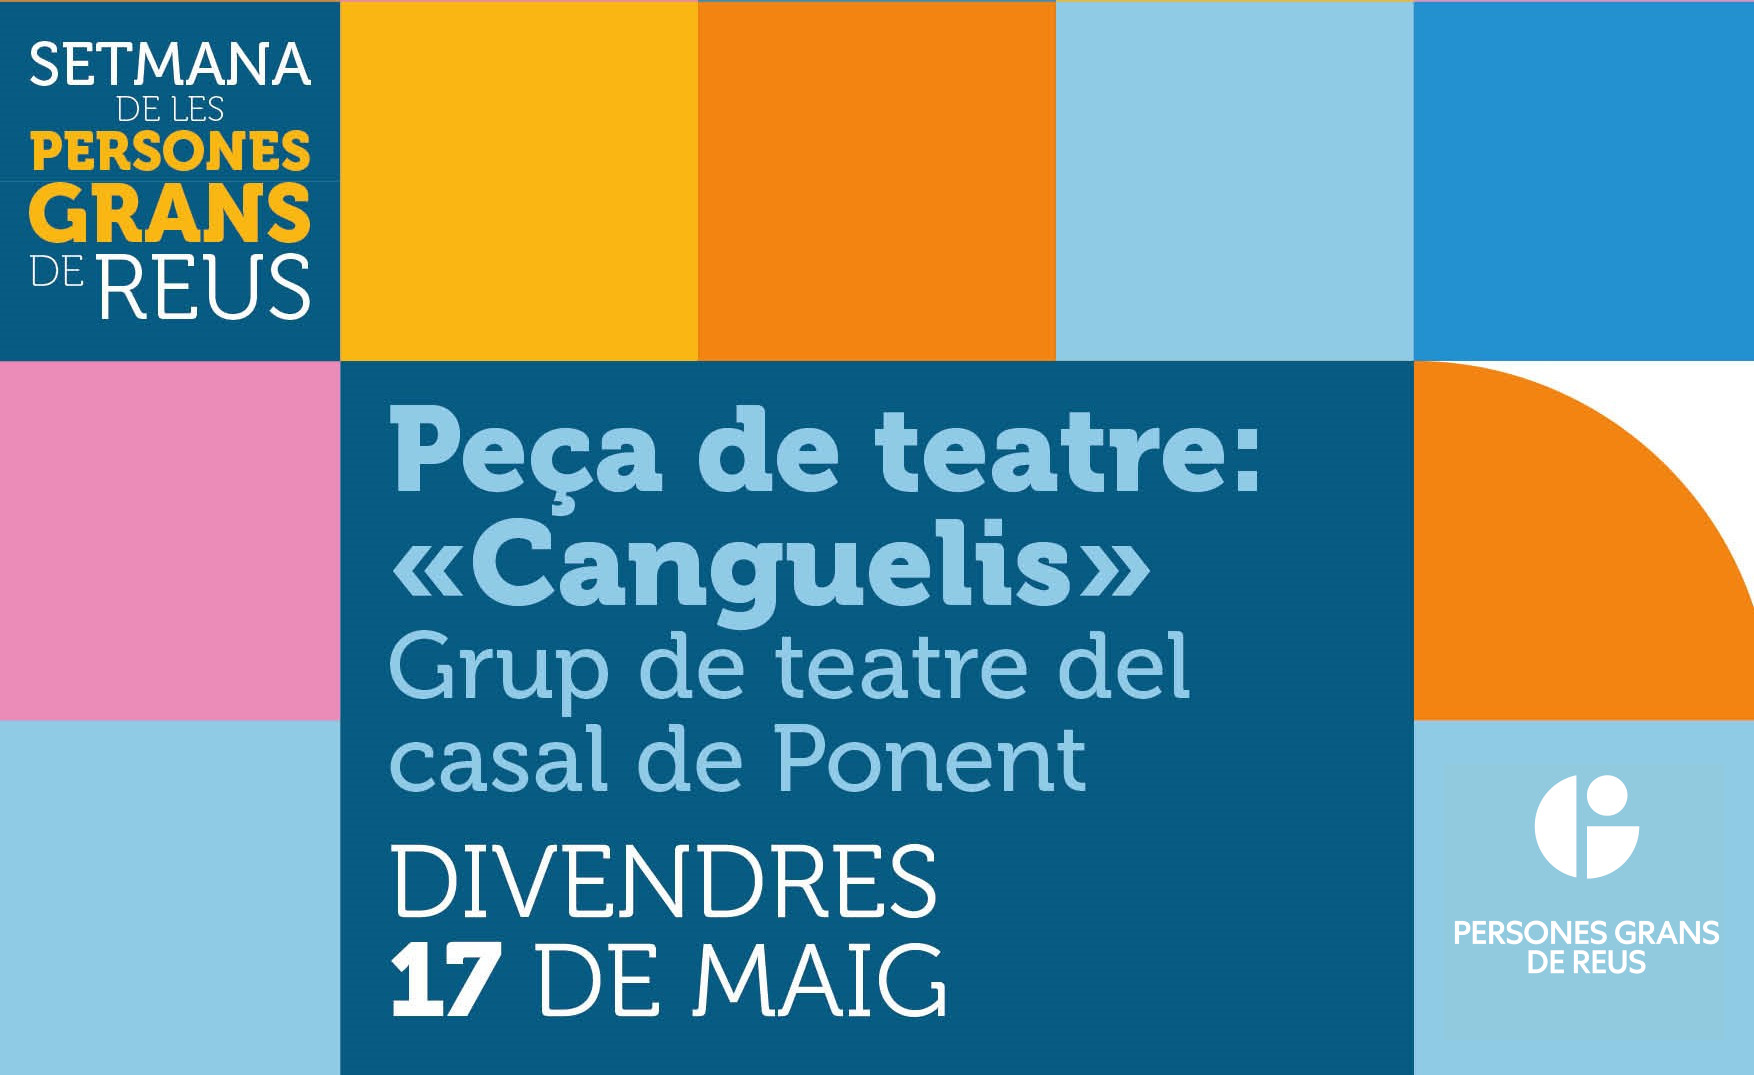 TEATRE "Canguelis" Grup de teatre Casal Ponent - SPG'24